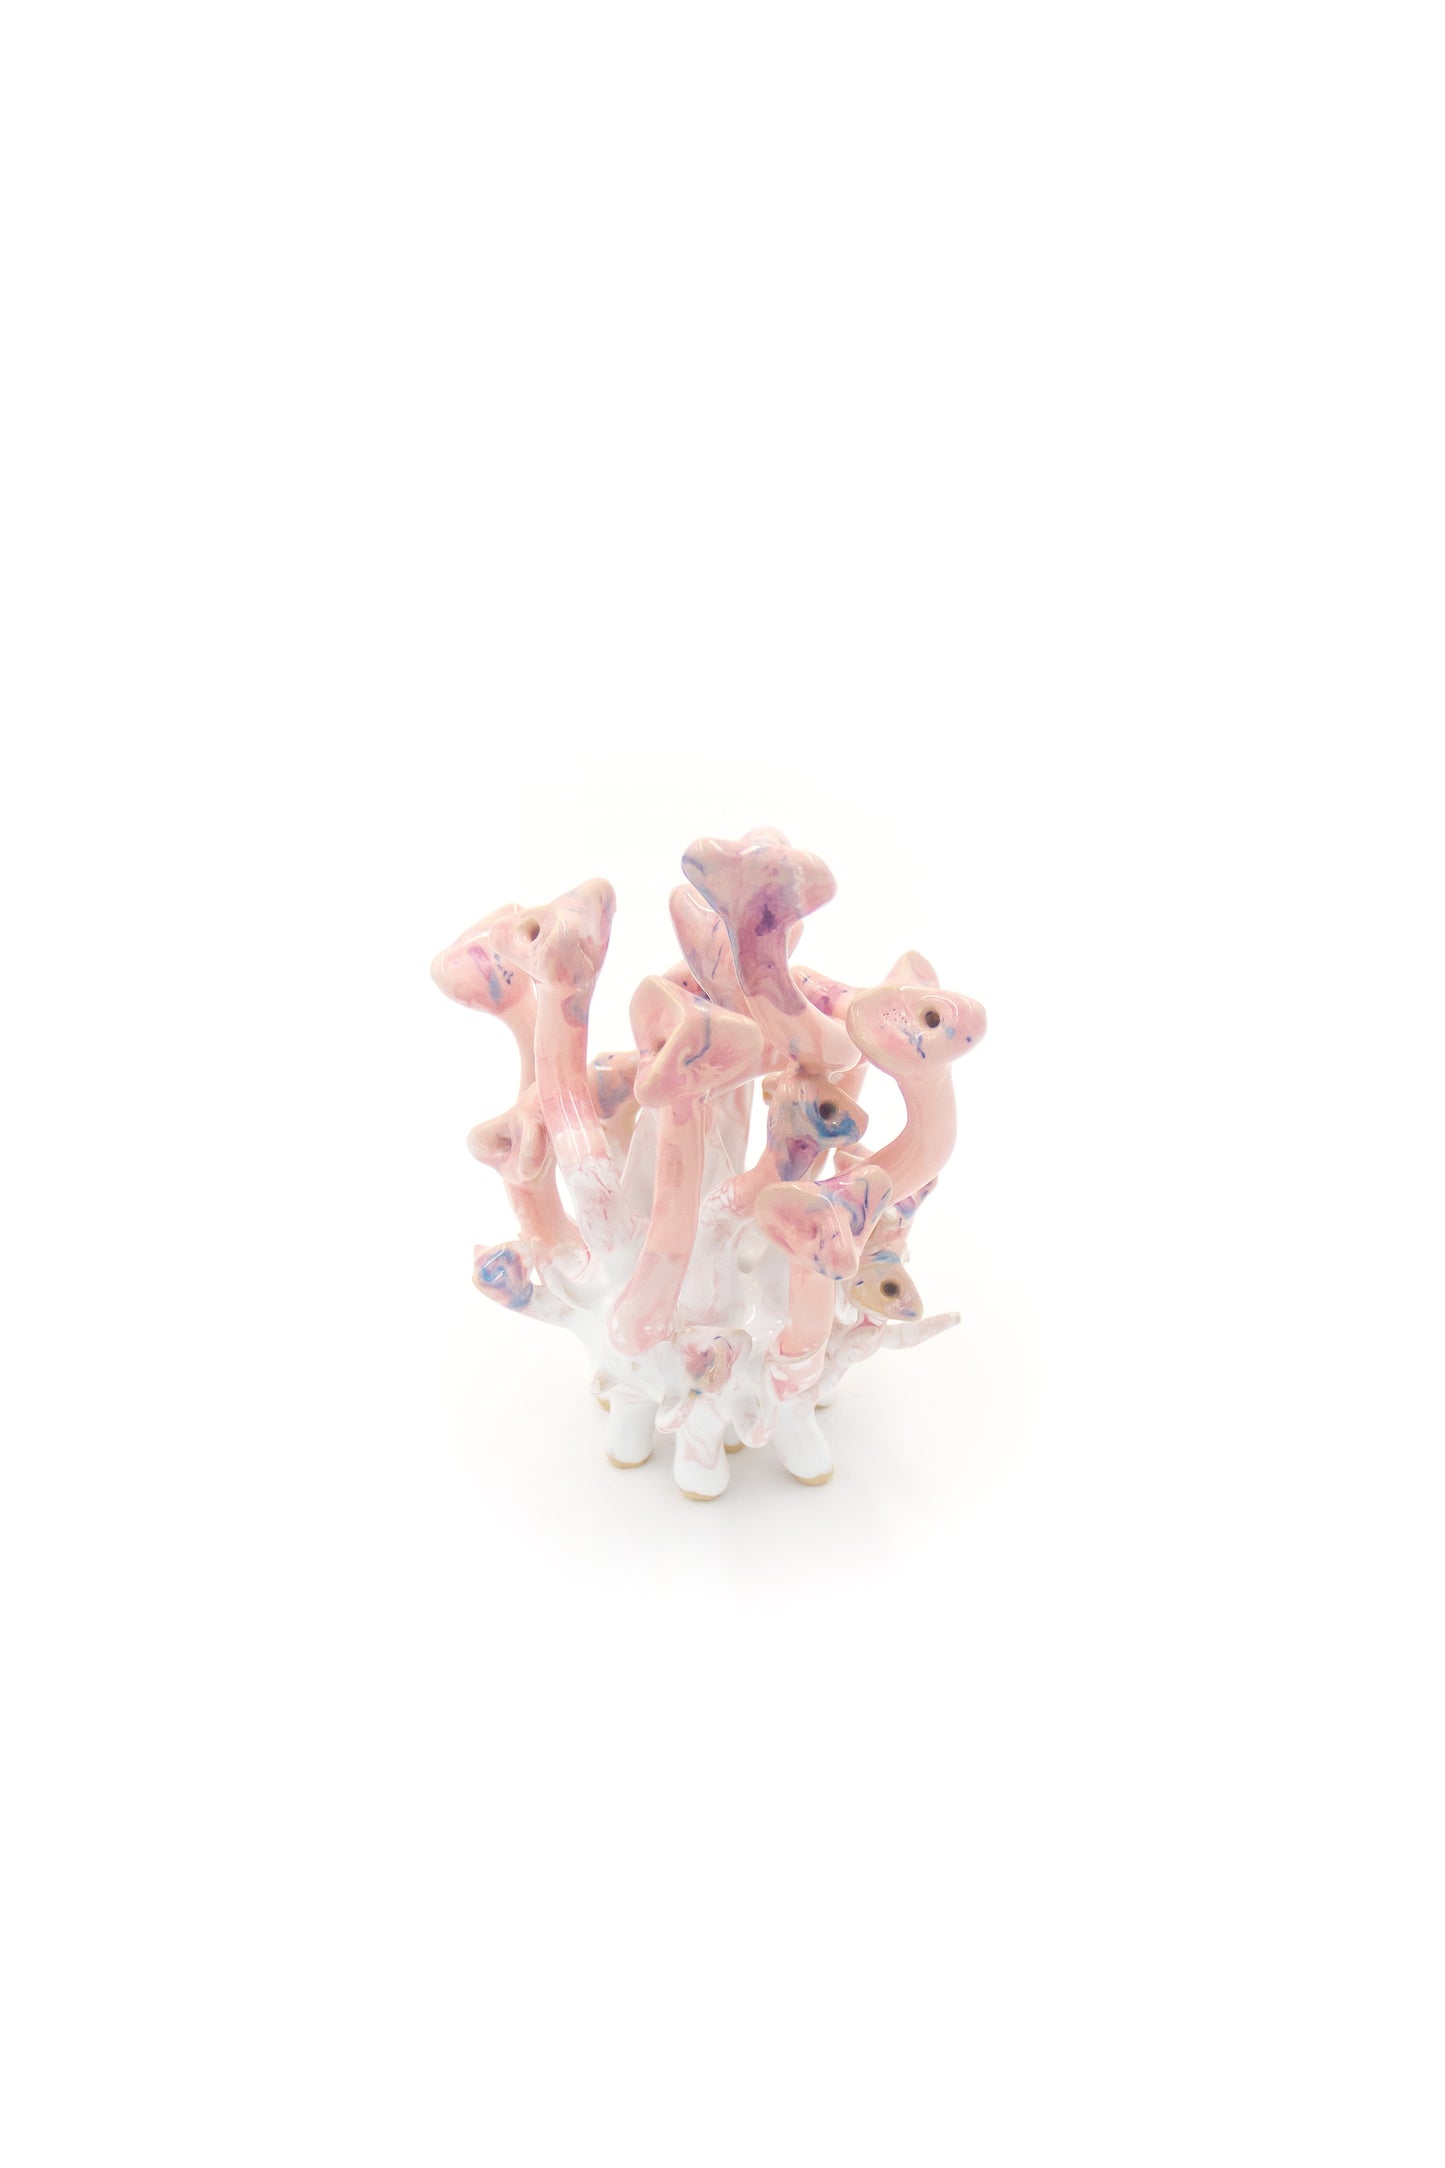 Werling pierworodny ceramiczny w kolorze biało-różowym